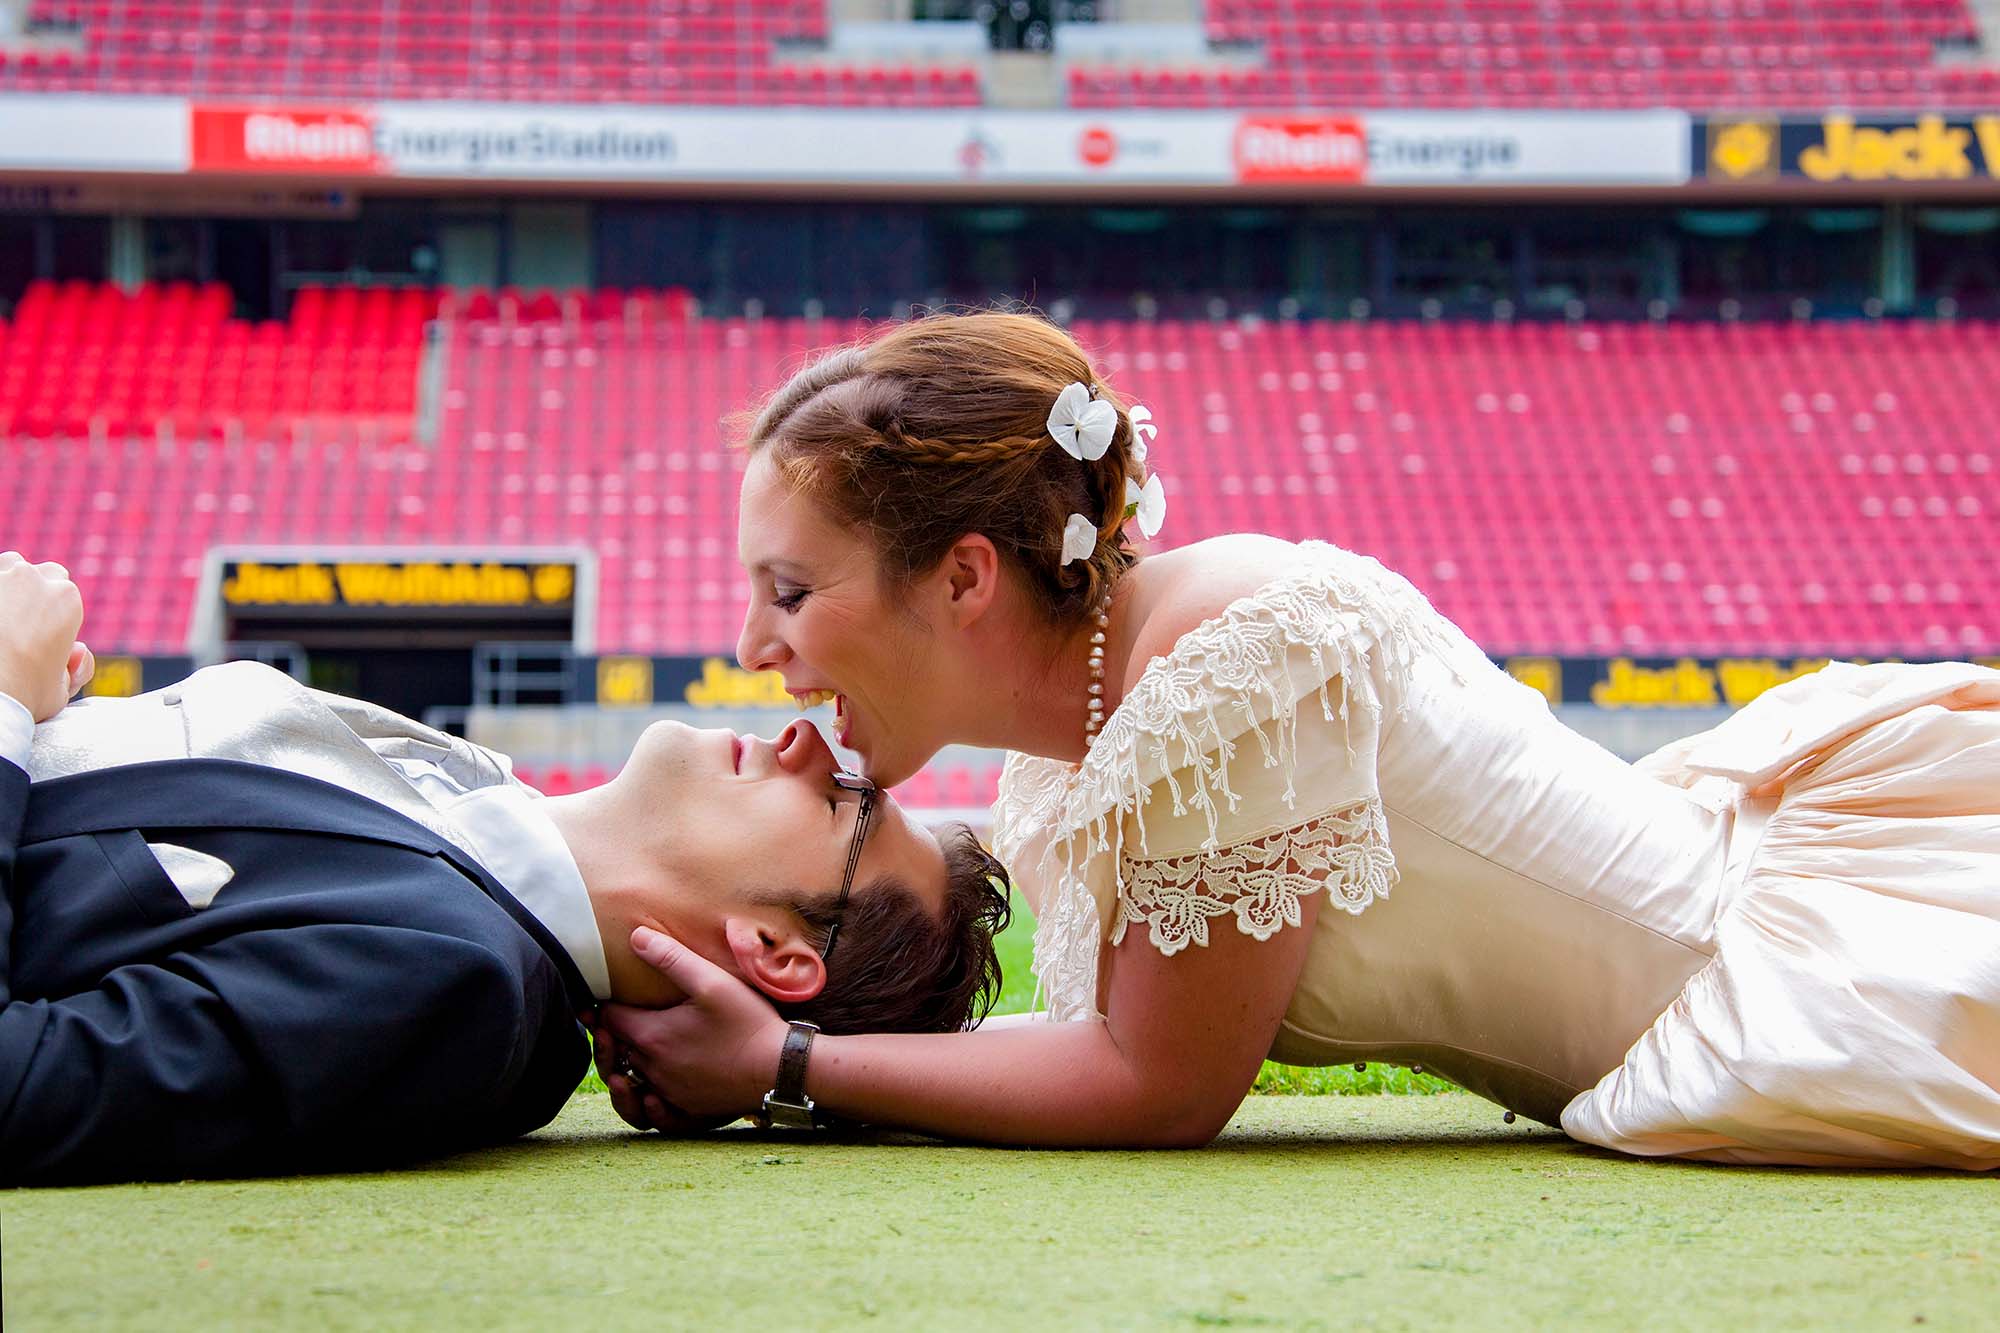 Hochzeitsfotos beim 1. FC Köln